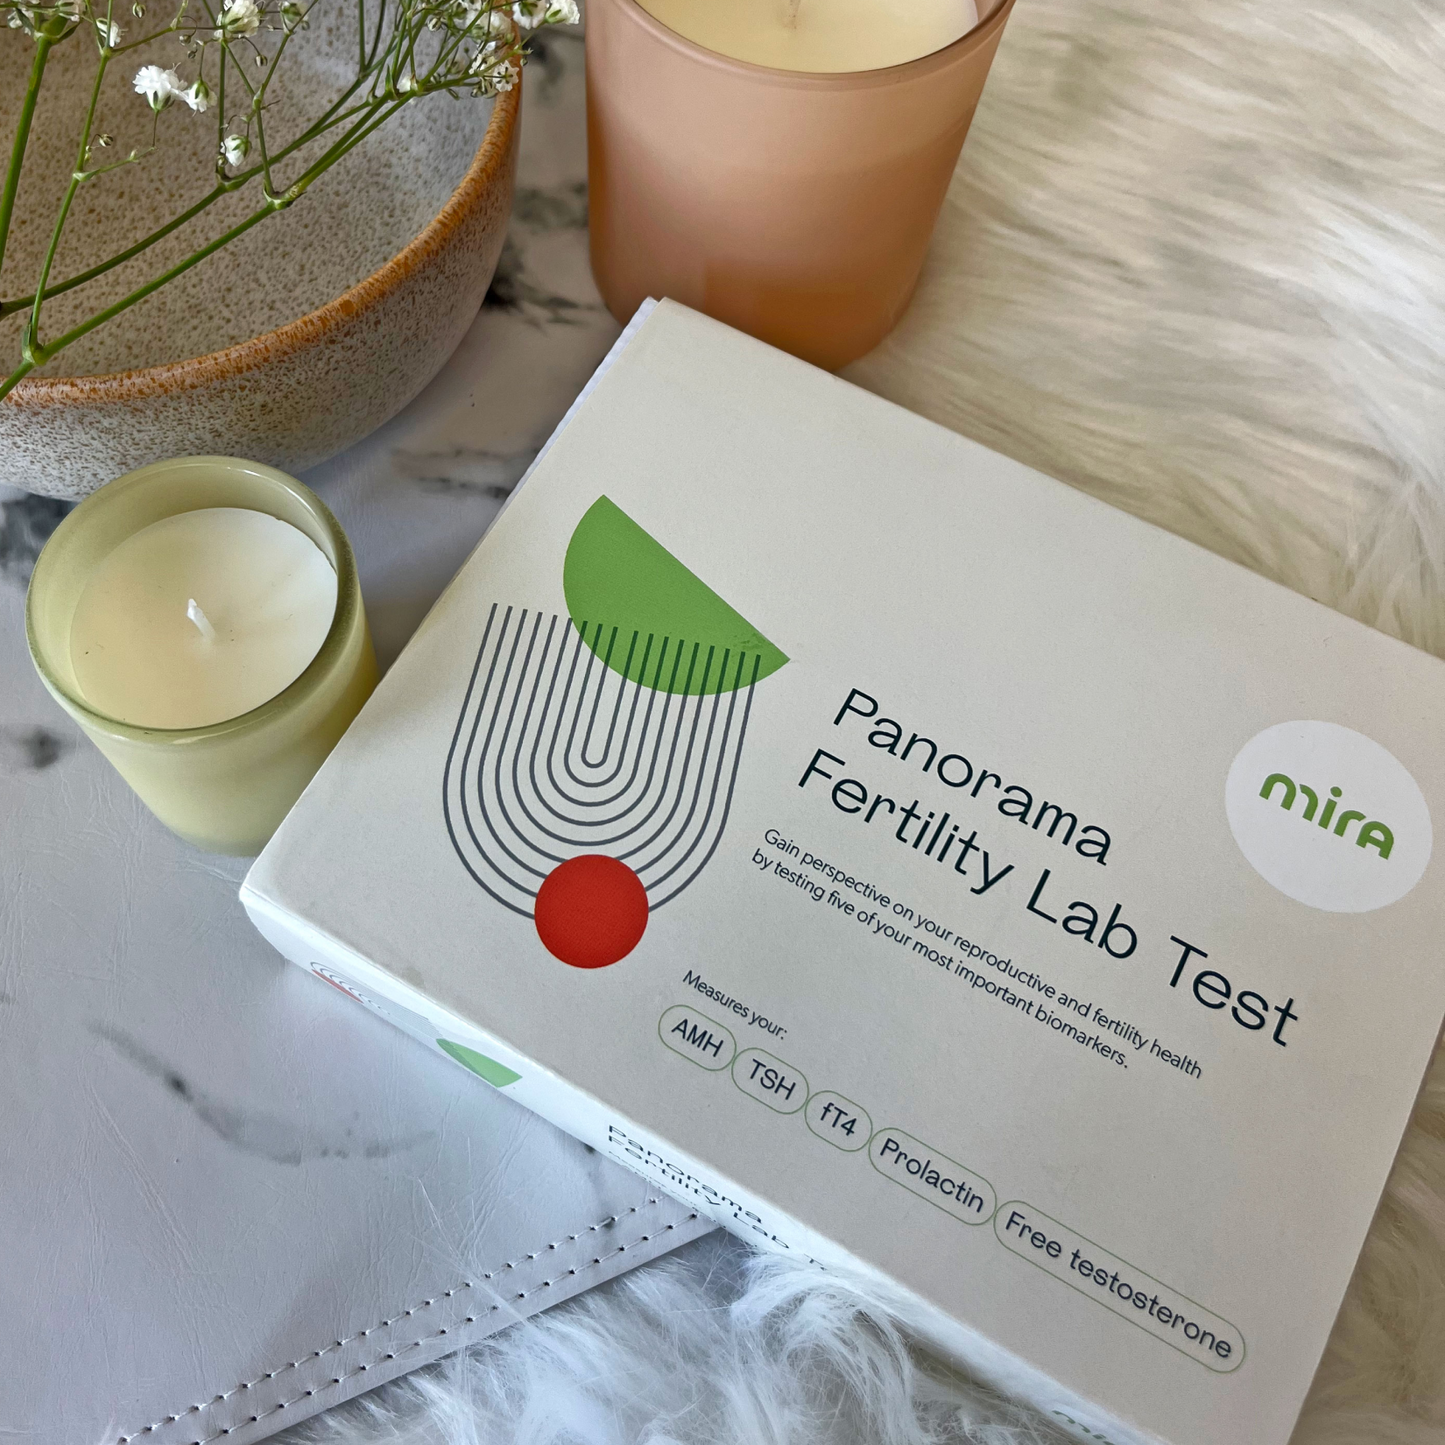 Mira Panorama Fertility Lab Test